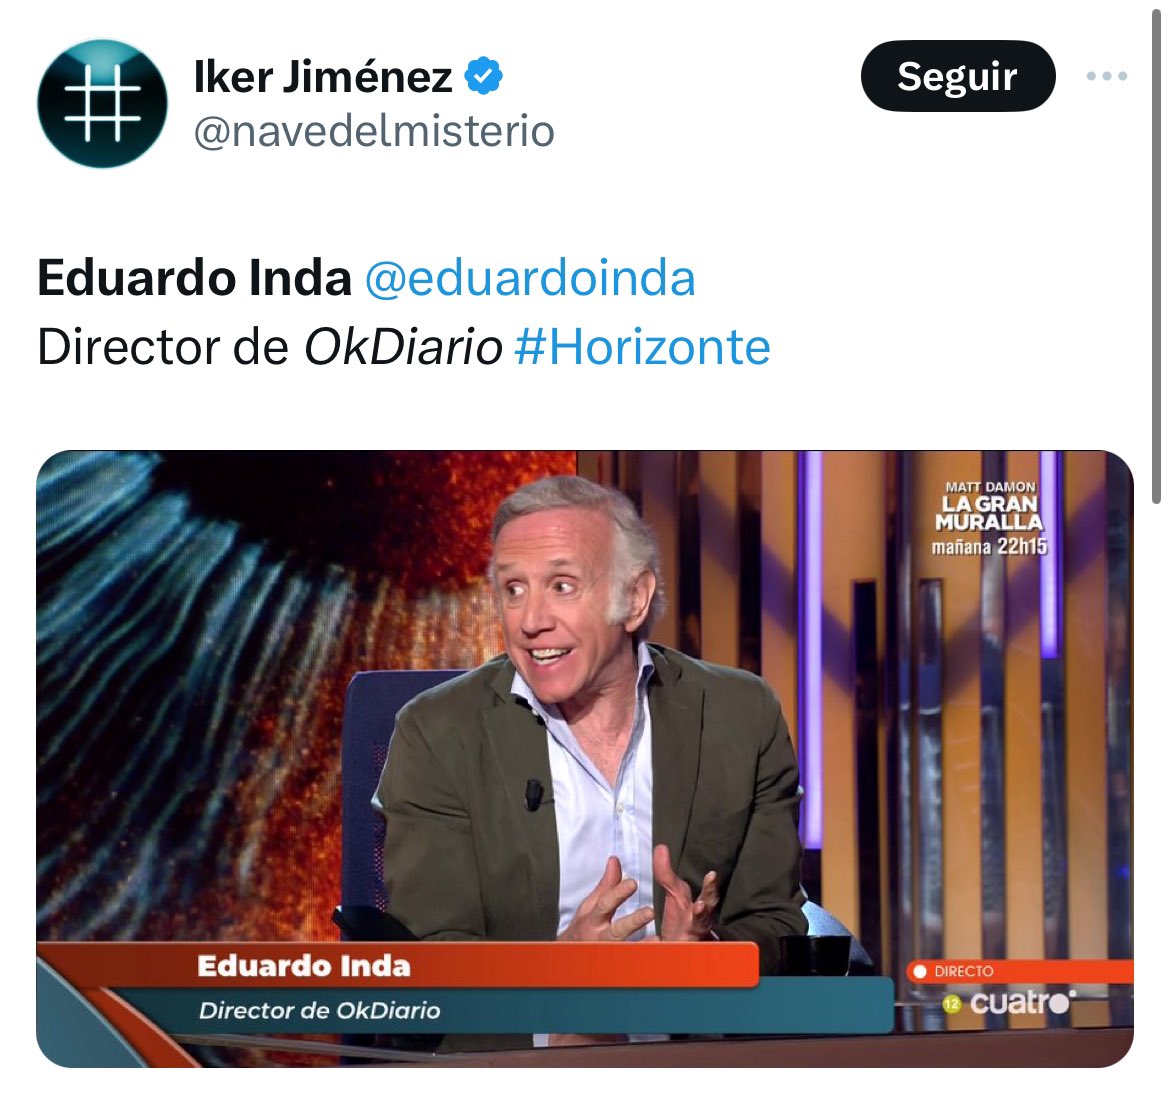 Vaya programita se le está quedando a Iker Jiménez hoy en #Horizonte. Se le ha colado un fantasma en plató. Vaya tela con el periodismo y la manera de informar de hoy día…. 🤮